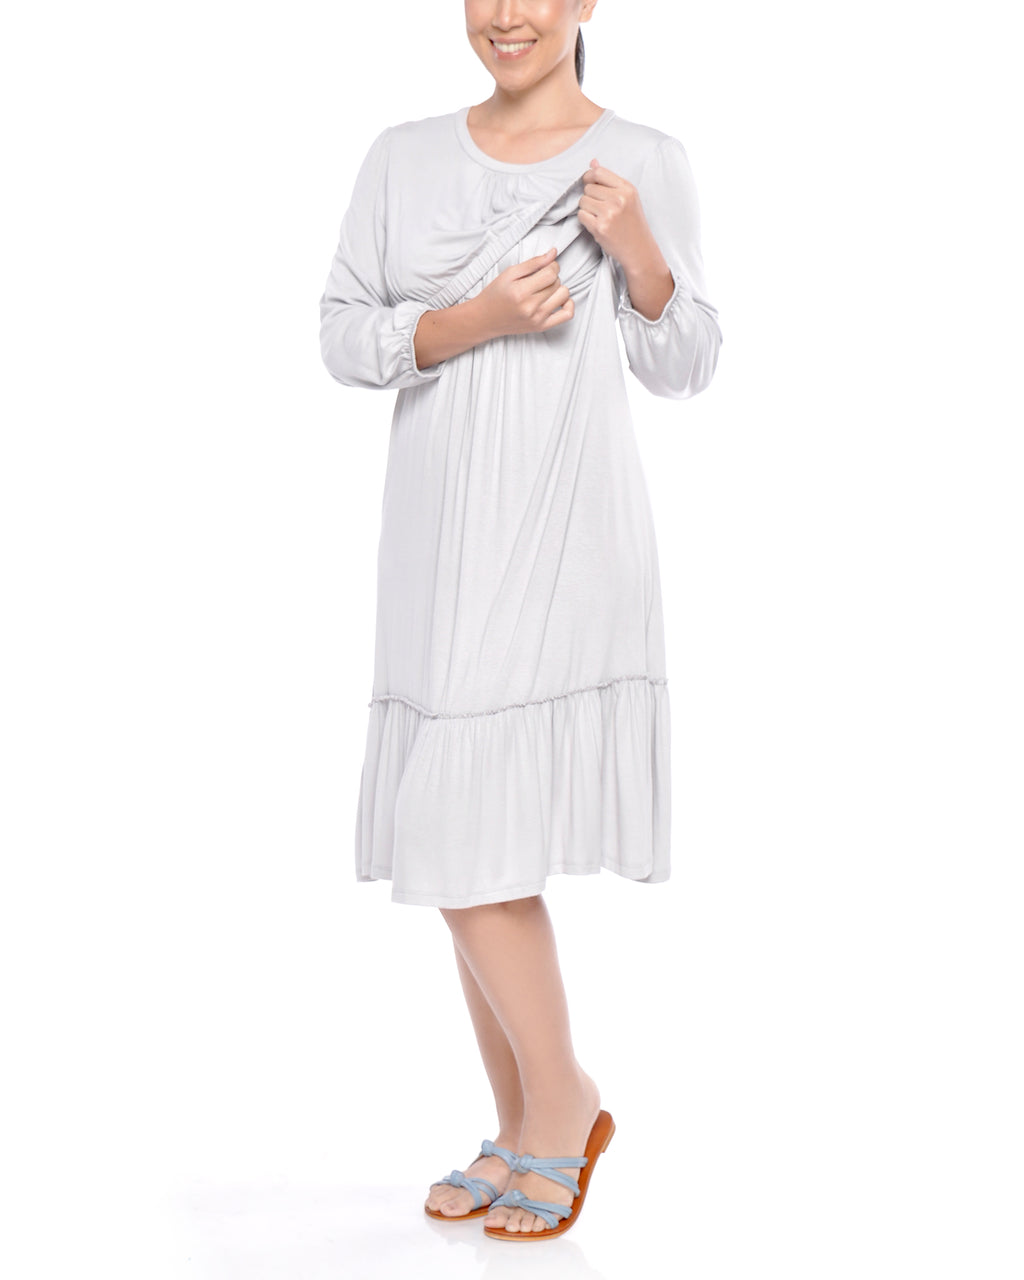 Carmela Nursing Dress